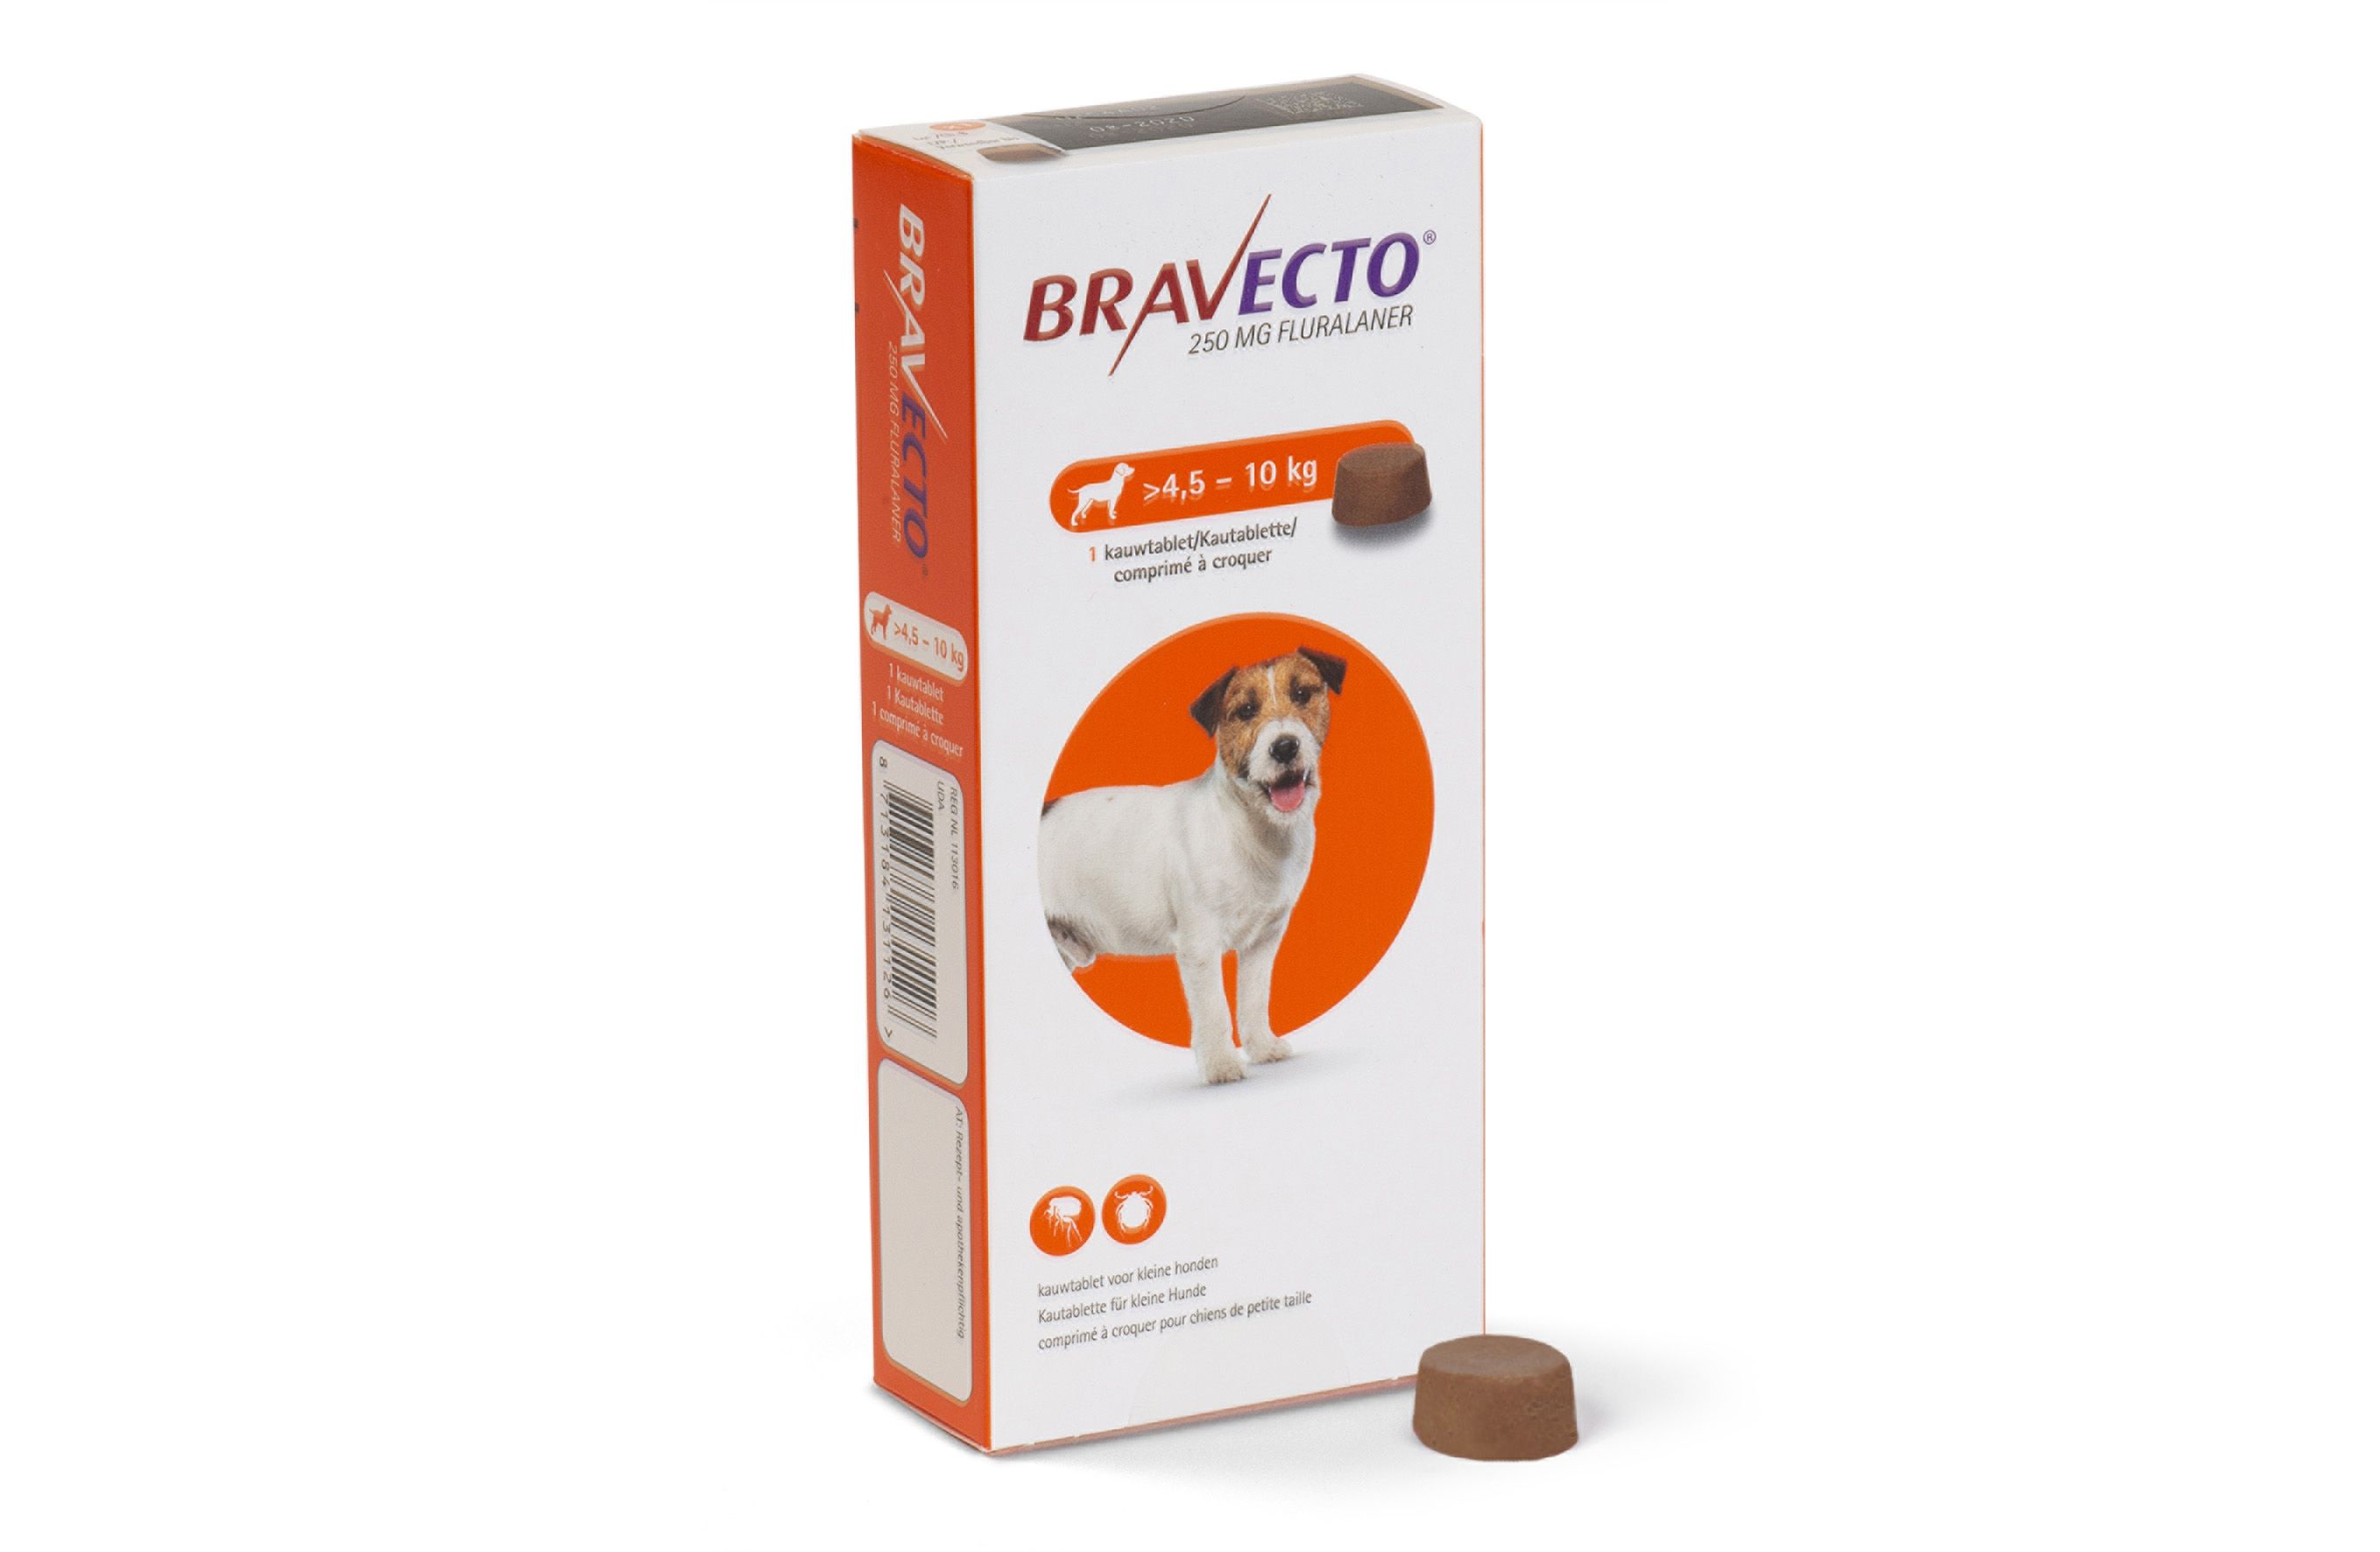 Verlammen zonnebloem kleding stof Bravecto hond 4,5-10 kg 1 tablet